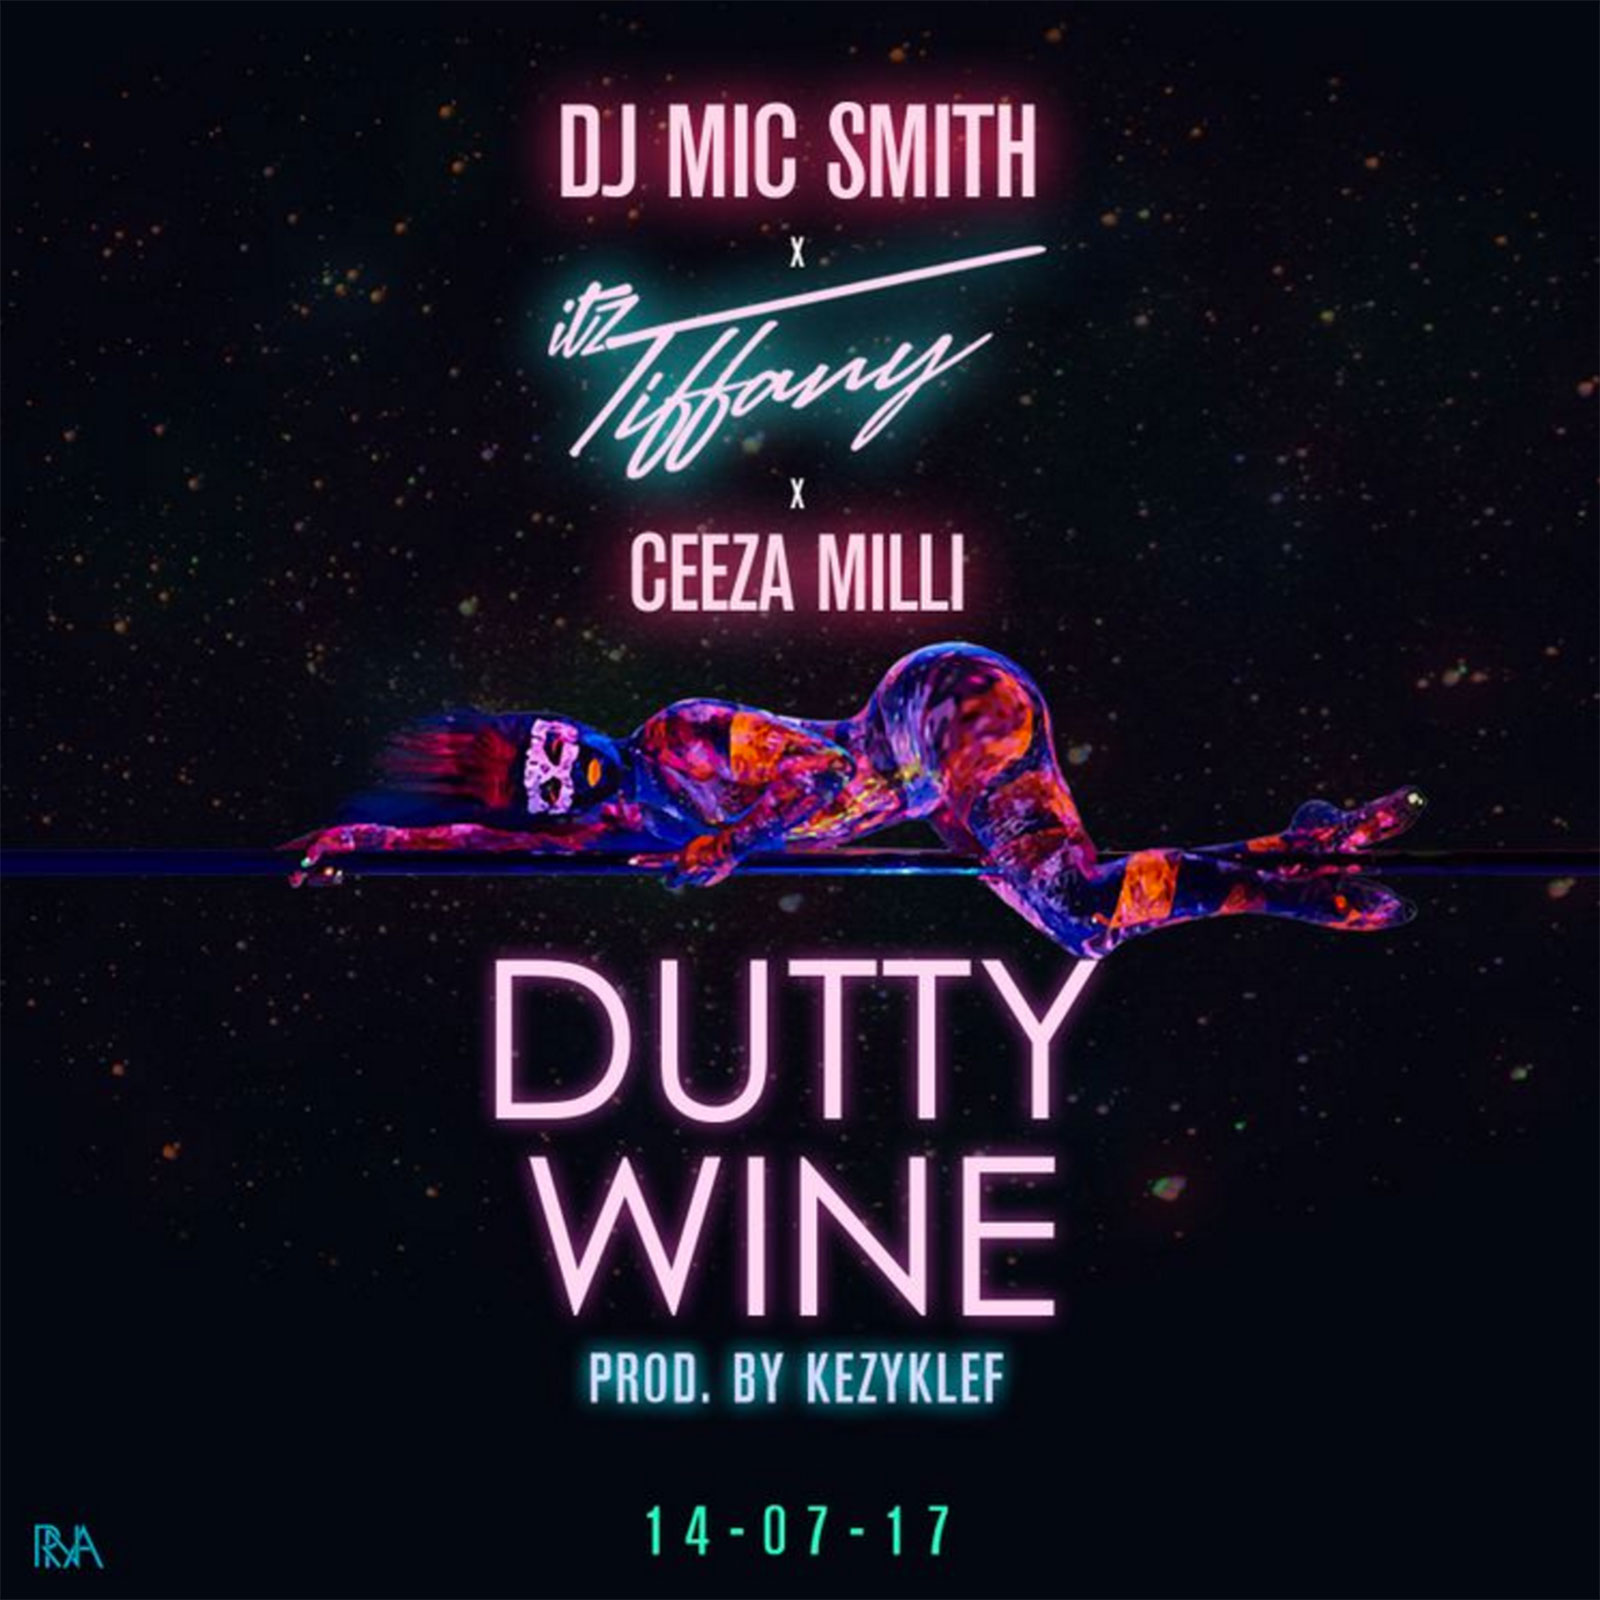 Dutty Wine by DJ Mic Smith & Itz Tiffany